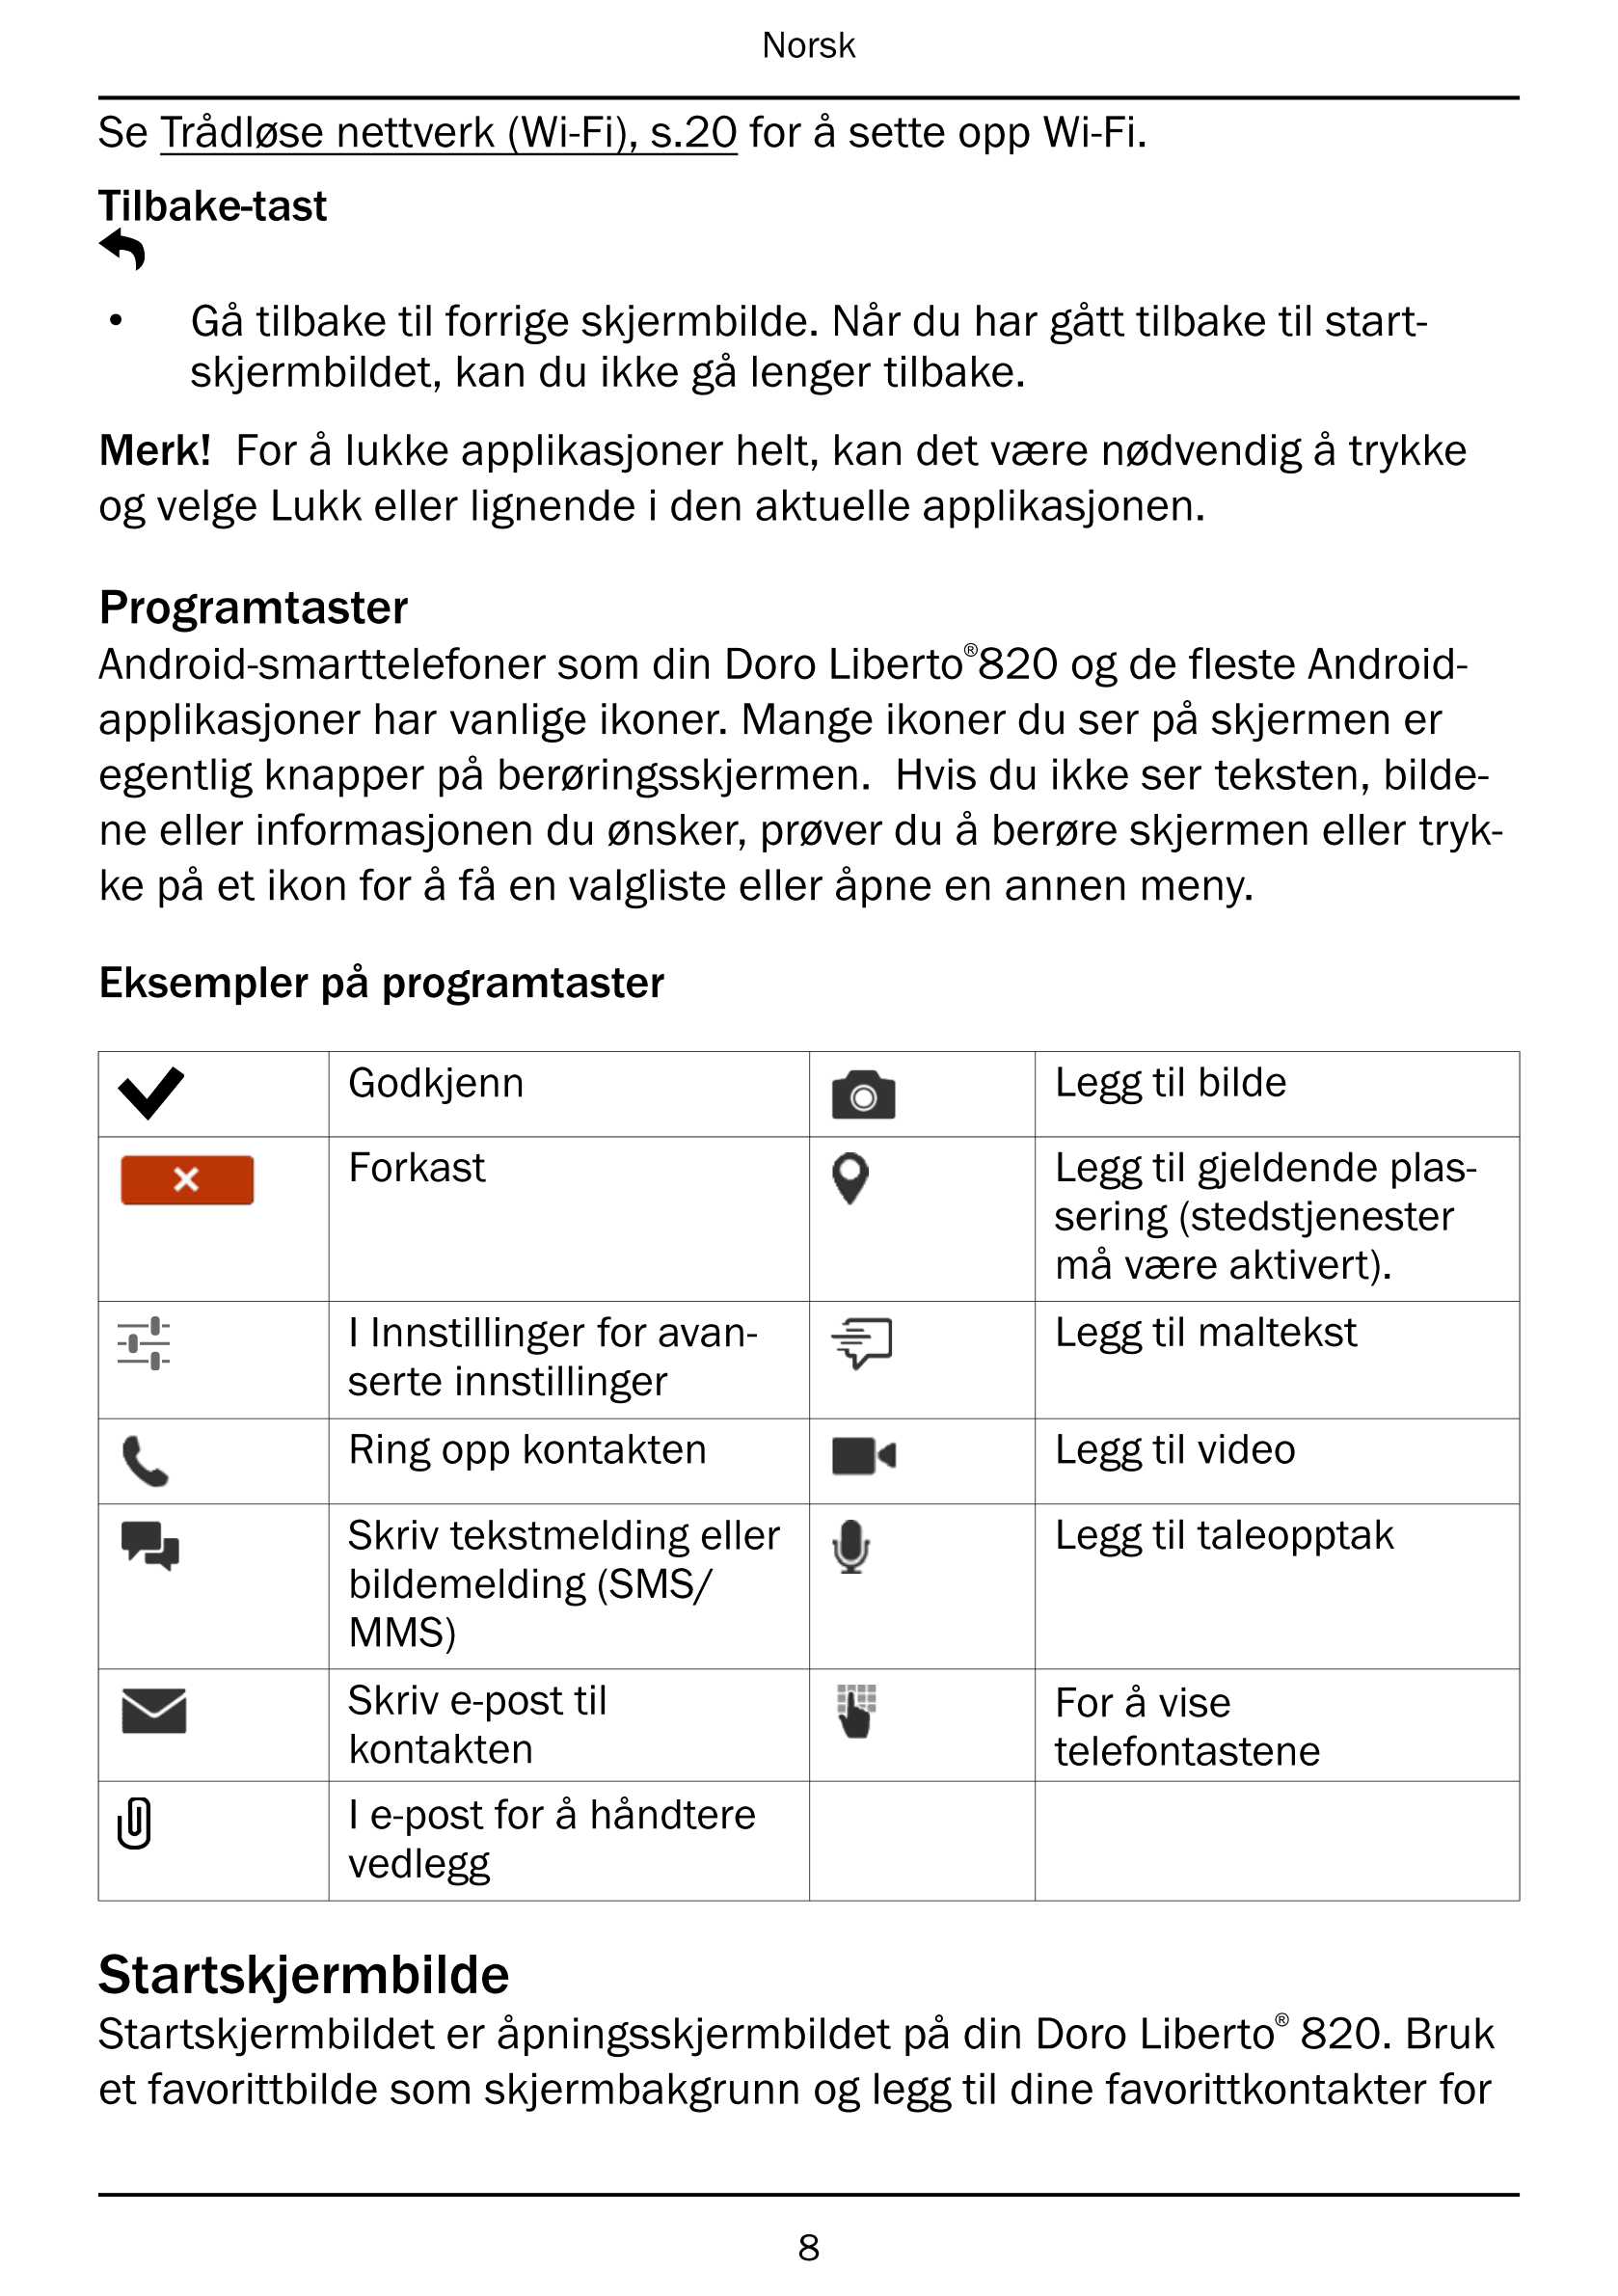 Norsk
Se Trådløse nettverk (Wi-Fi), s.20 for å sette opp Wi-Fi.
Tilbake-tast
• Gå tilbake til forrige skjermbilde. Når du har gå